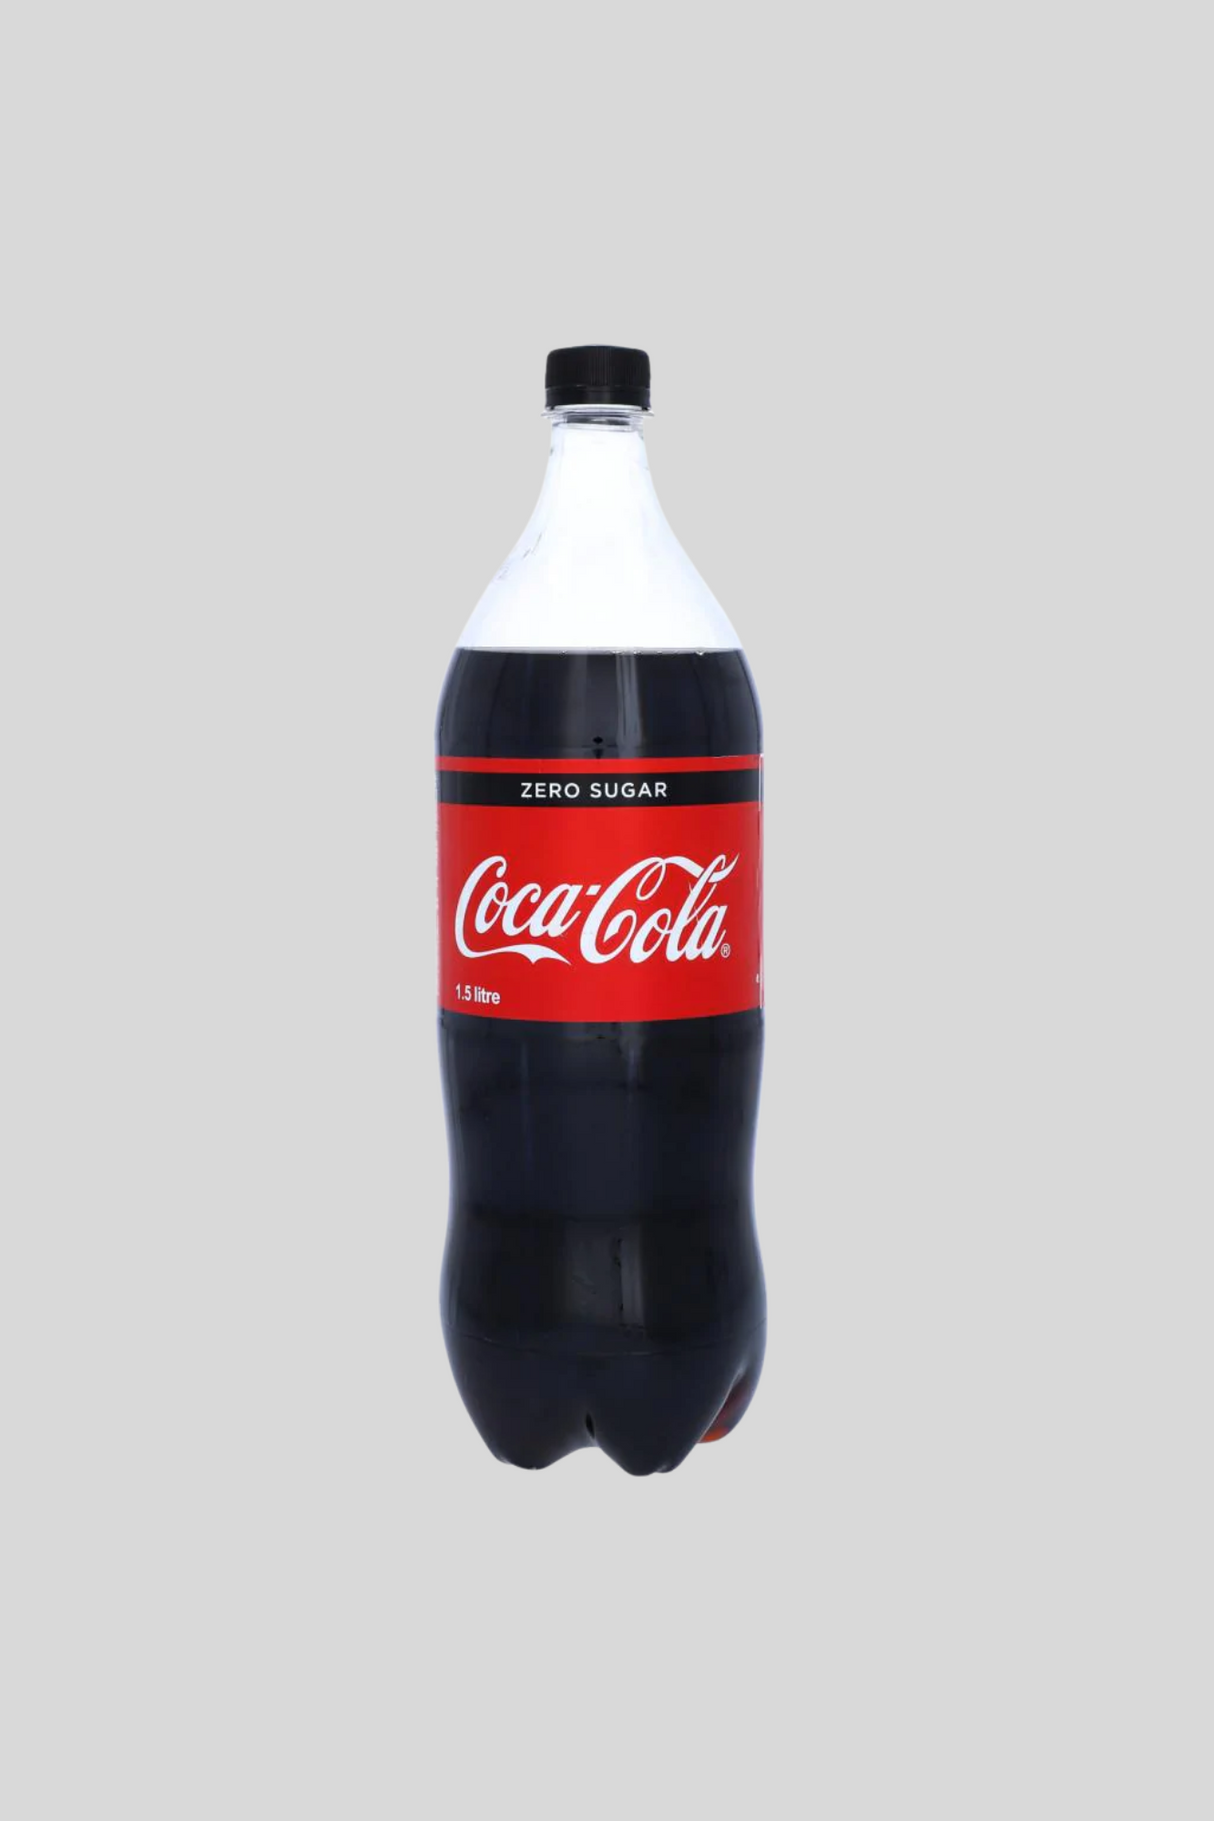 coke zero sugar 1.5l